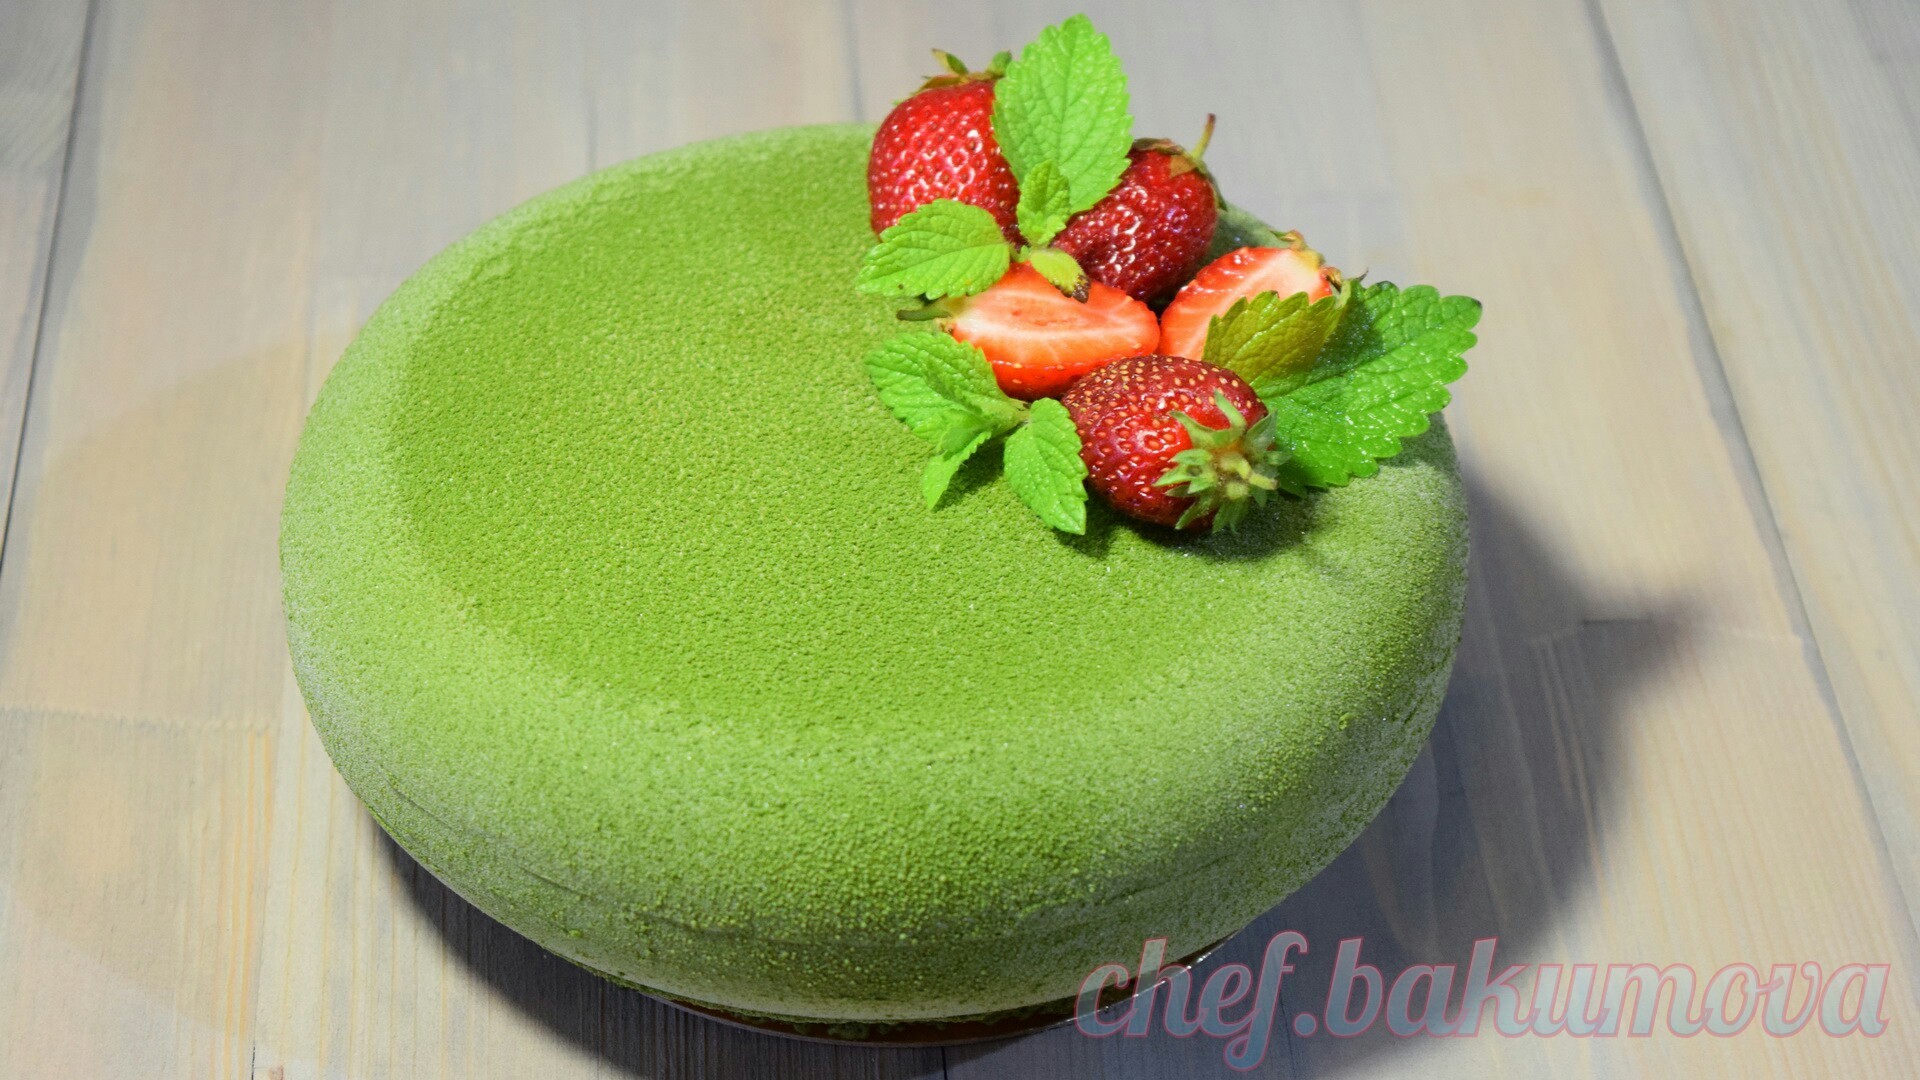 Фото к рецепту: Муссовый торт с велюром "зелёный бархат". пошаговое исполнение. видео